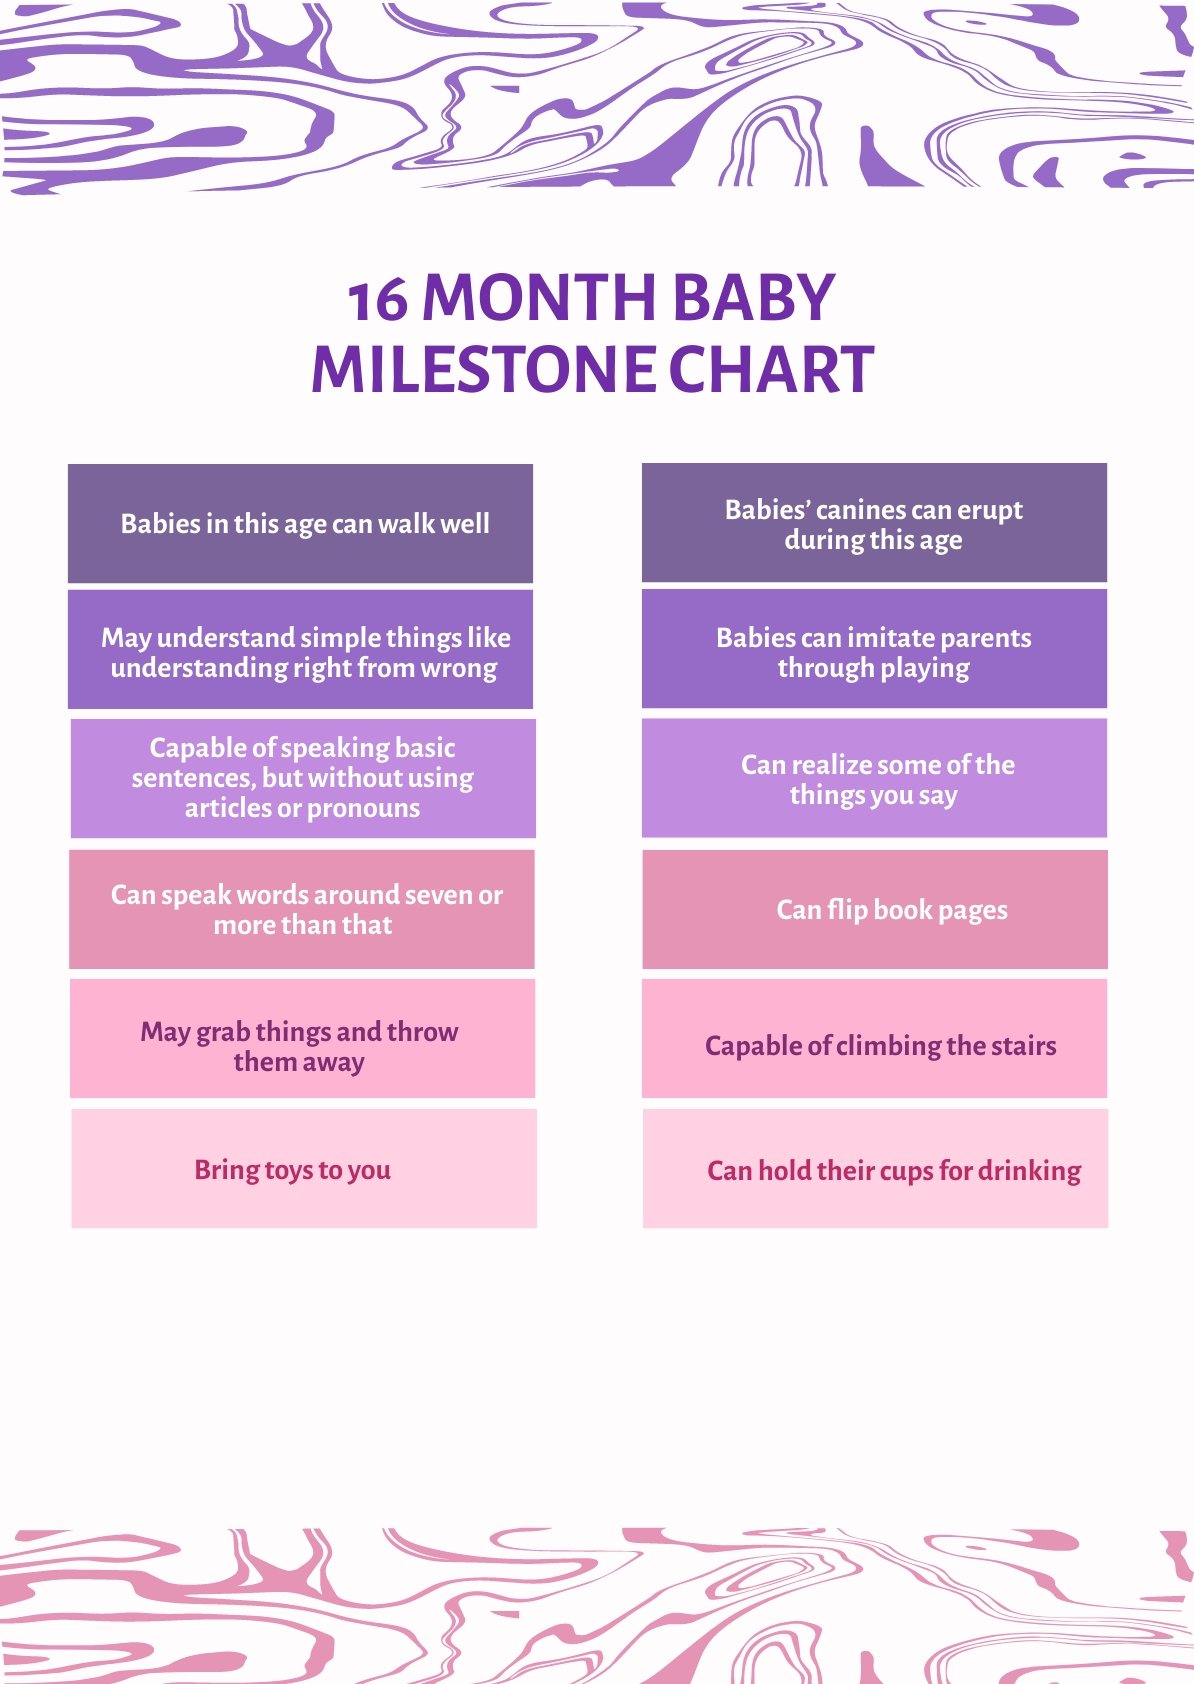 16 Month Baby Milestone Chart